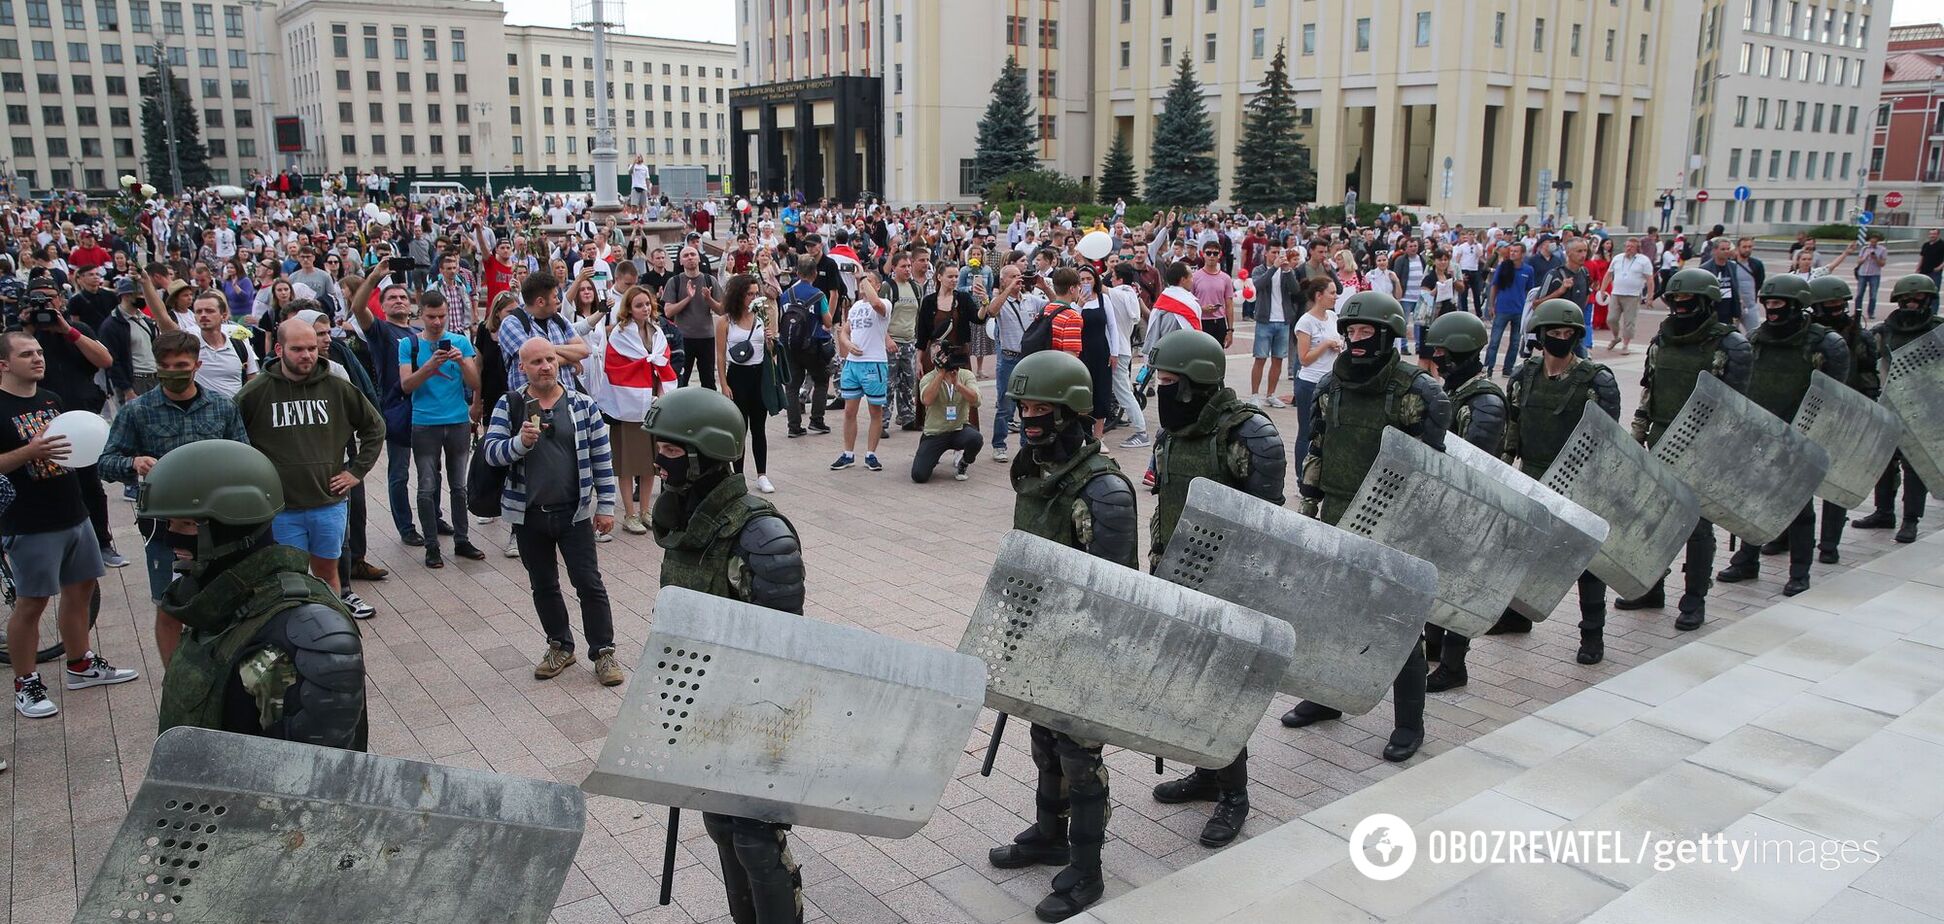 Протести в Білорусі